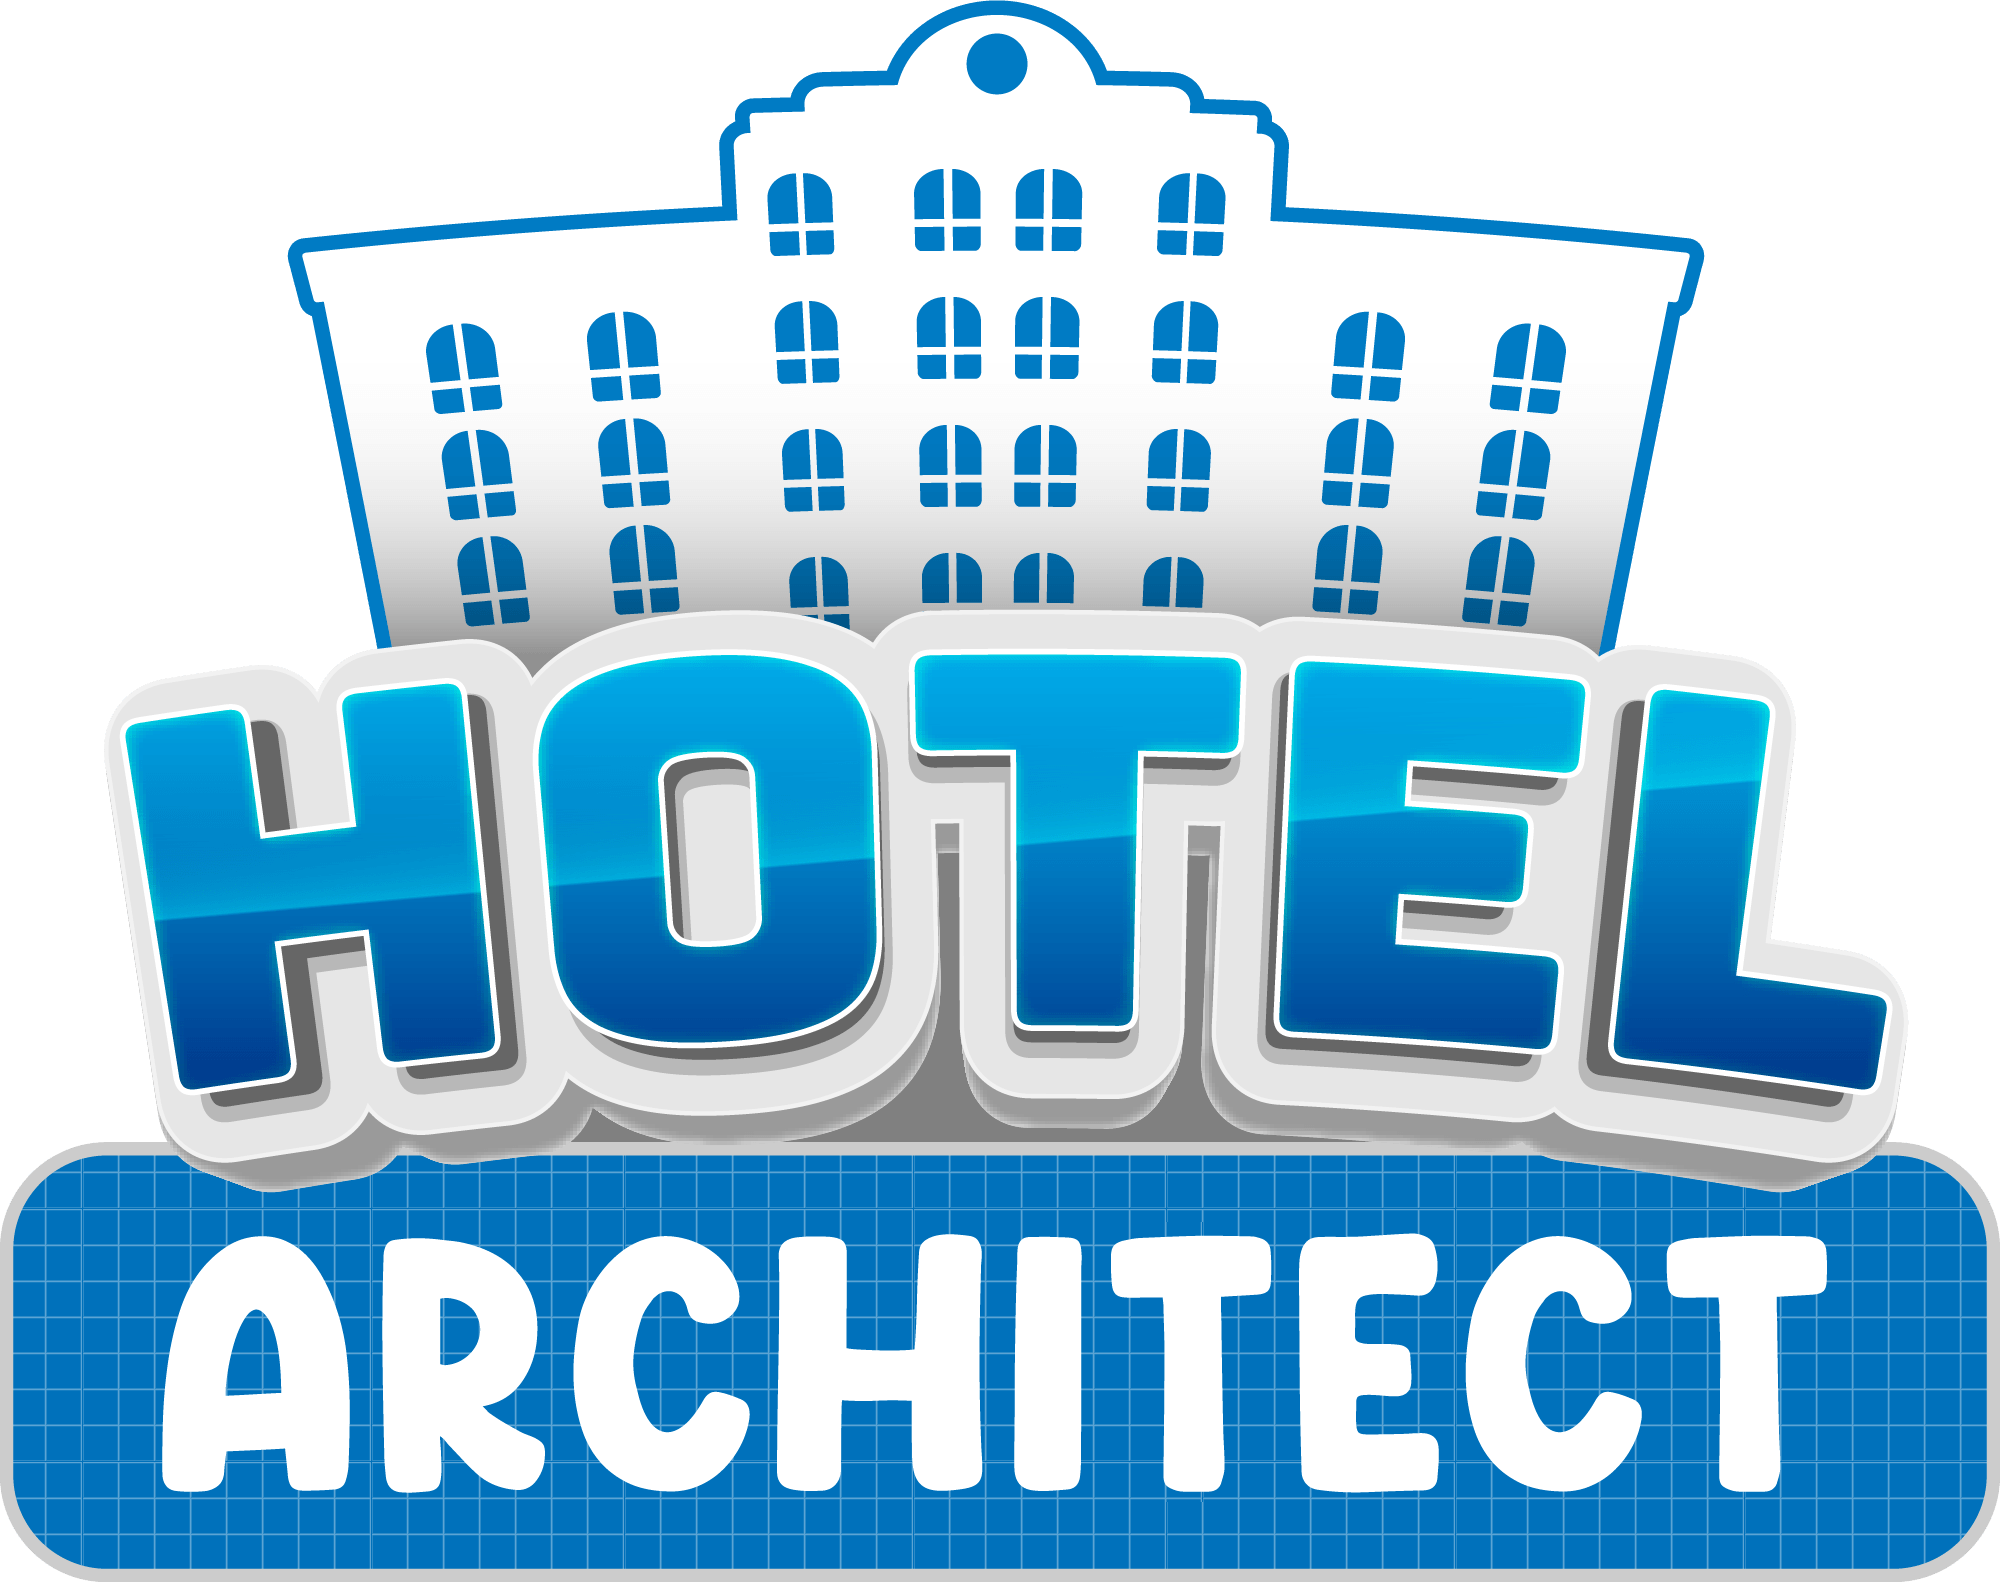 Hotel Architect logo